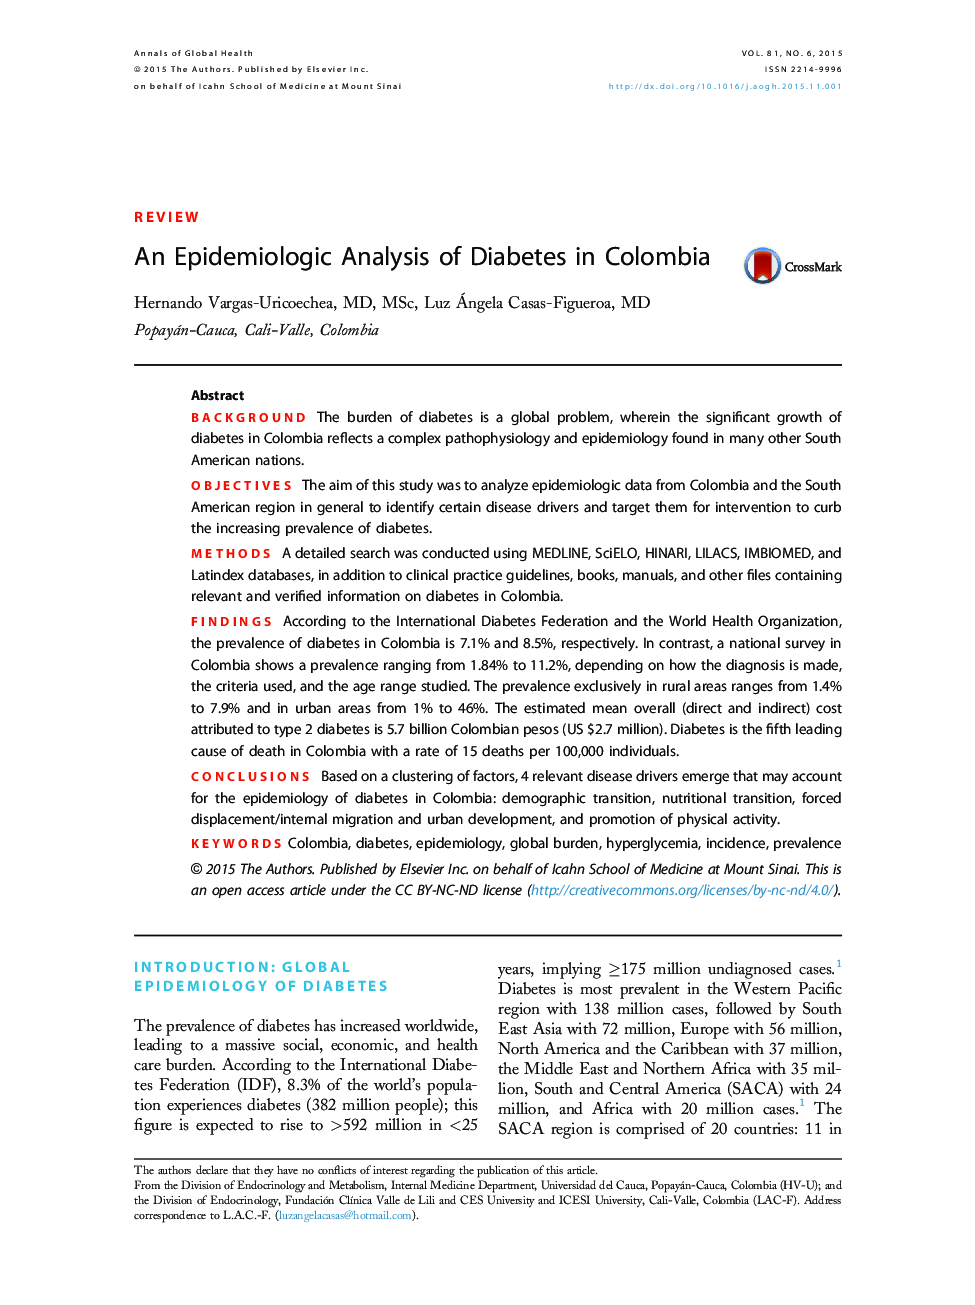 یک بررسی اپیدمیولوژیک دیابت در کلمبیا 